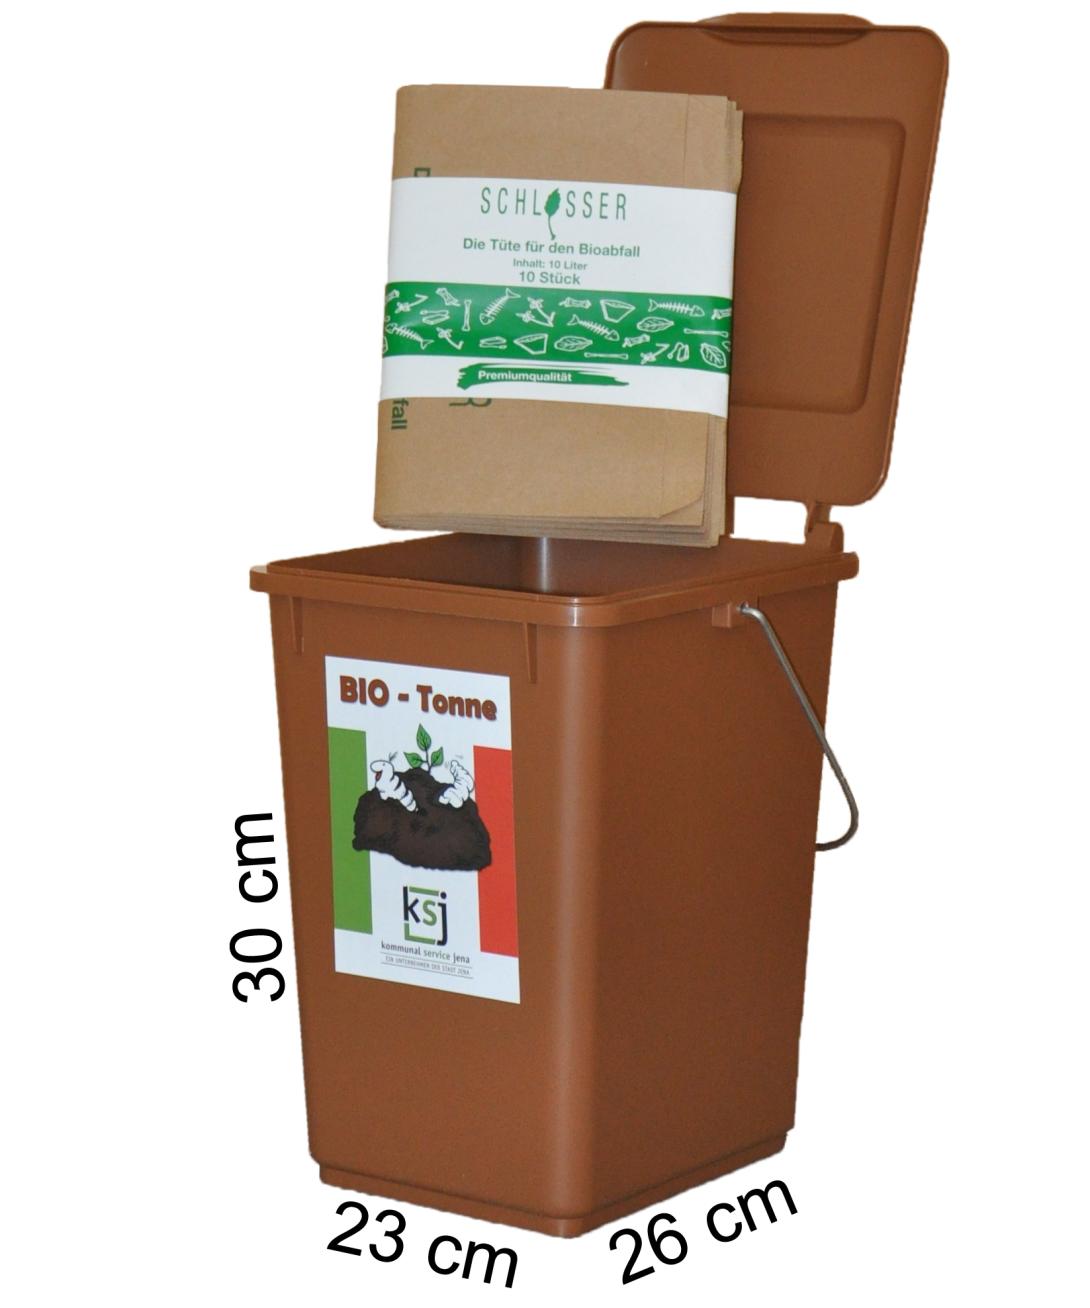 Mini-Bioabfall-Behälter für die Küche